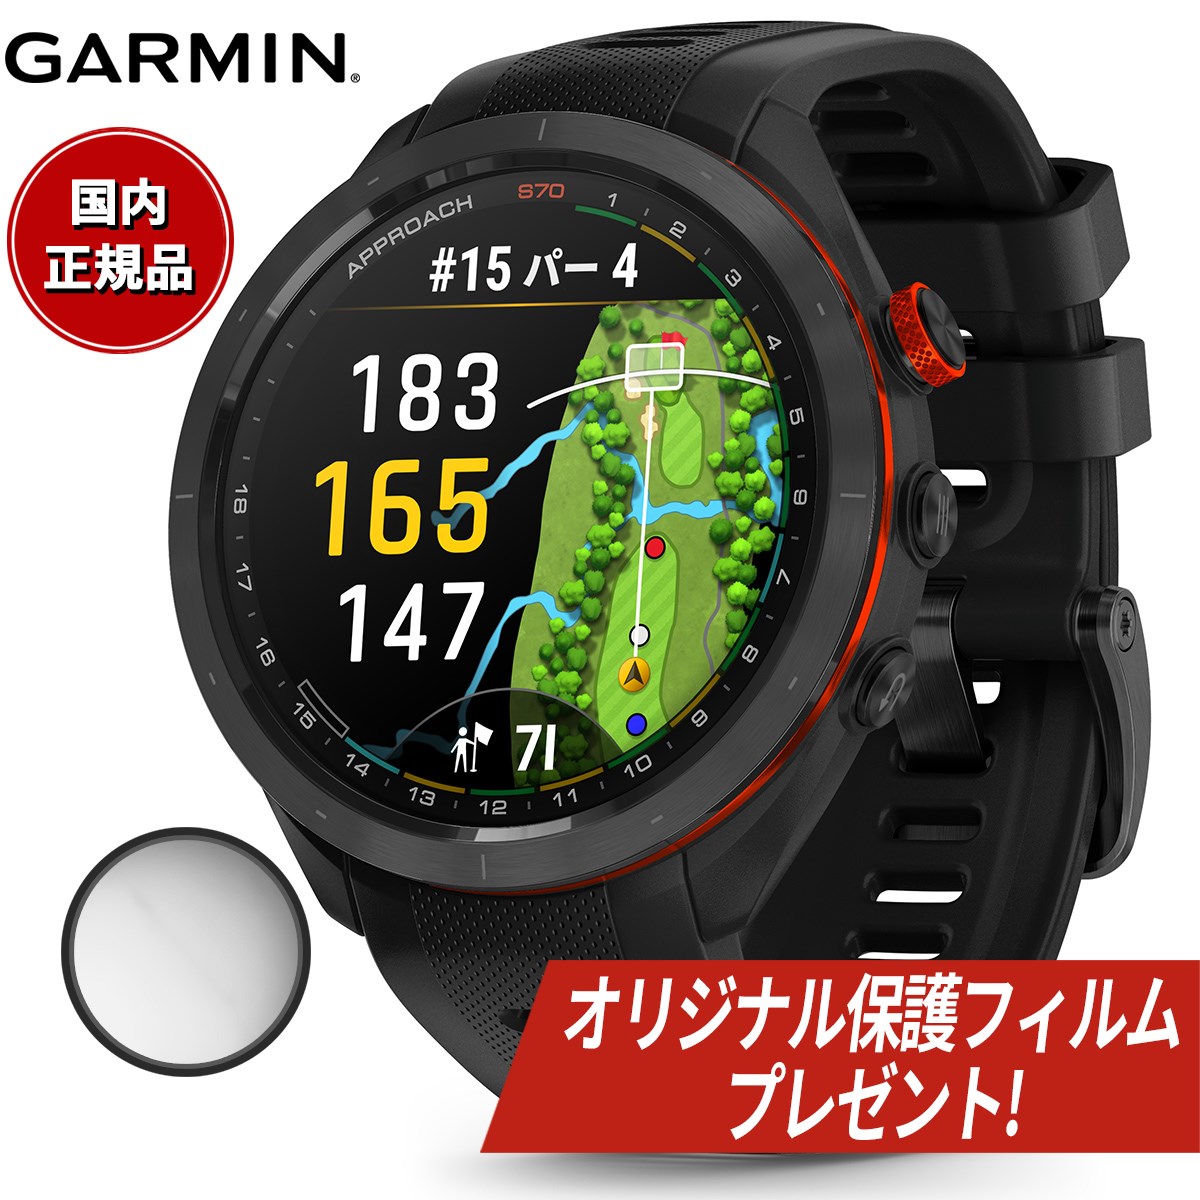 ガーミン GARMIN Approach S70 アプローチ S70 47mm ゴルフ GPS スマートウォッチ ウェアラブル 010-02746-22 腕時計 メンズ レディース ブラック